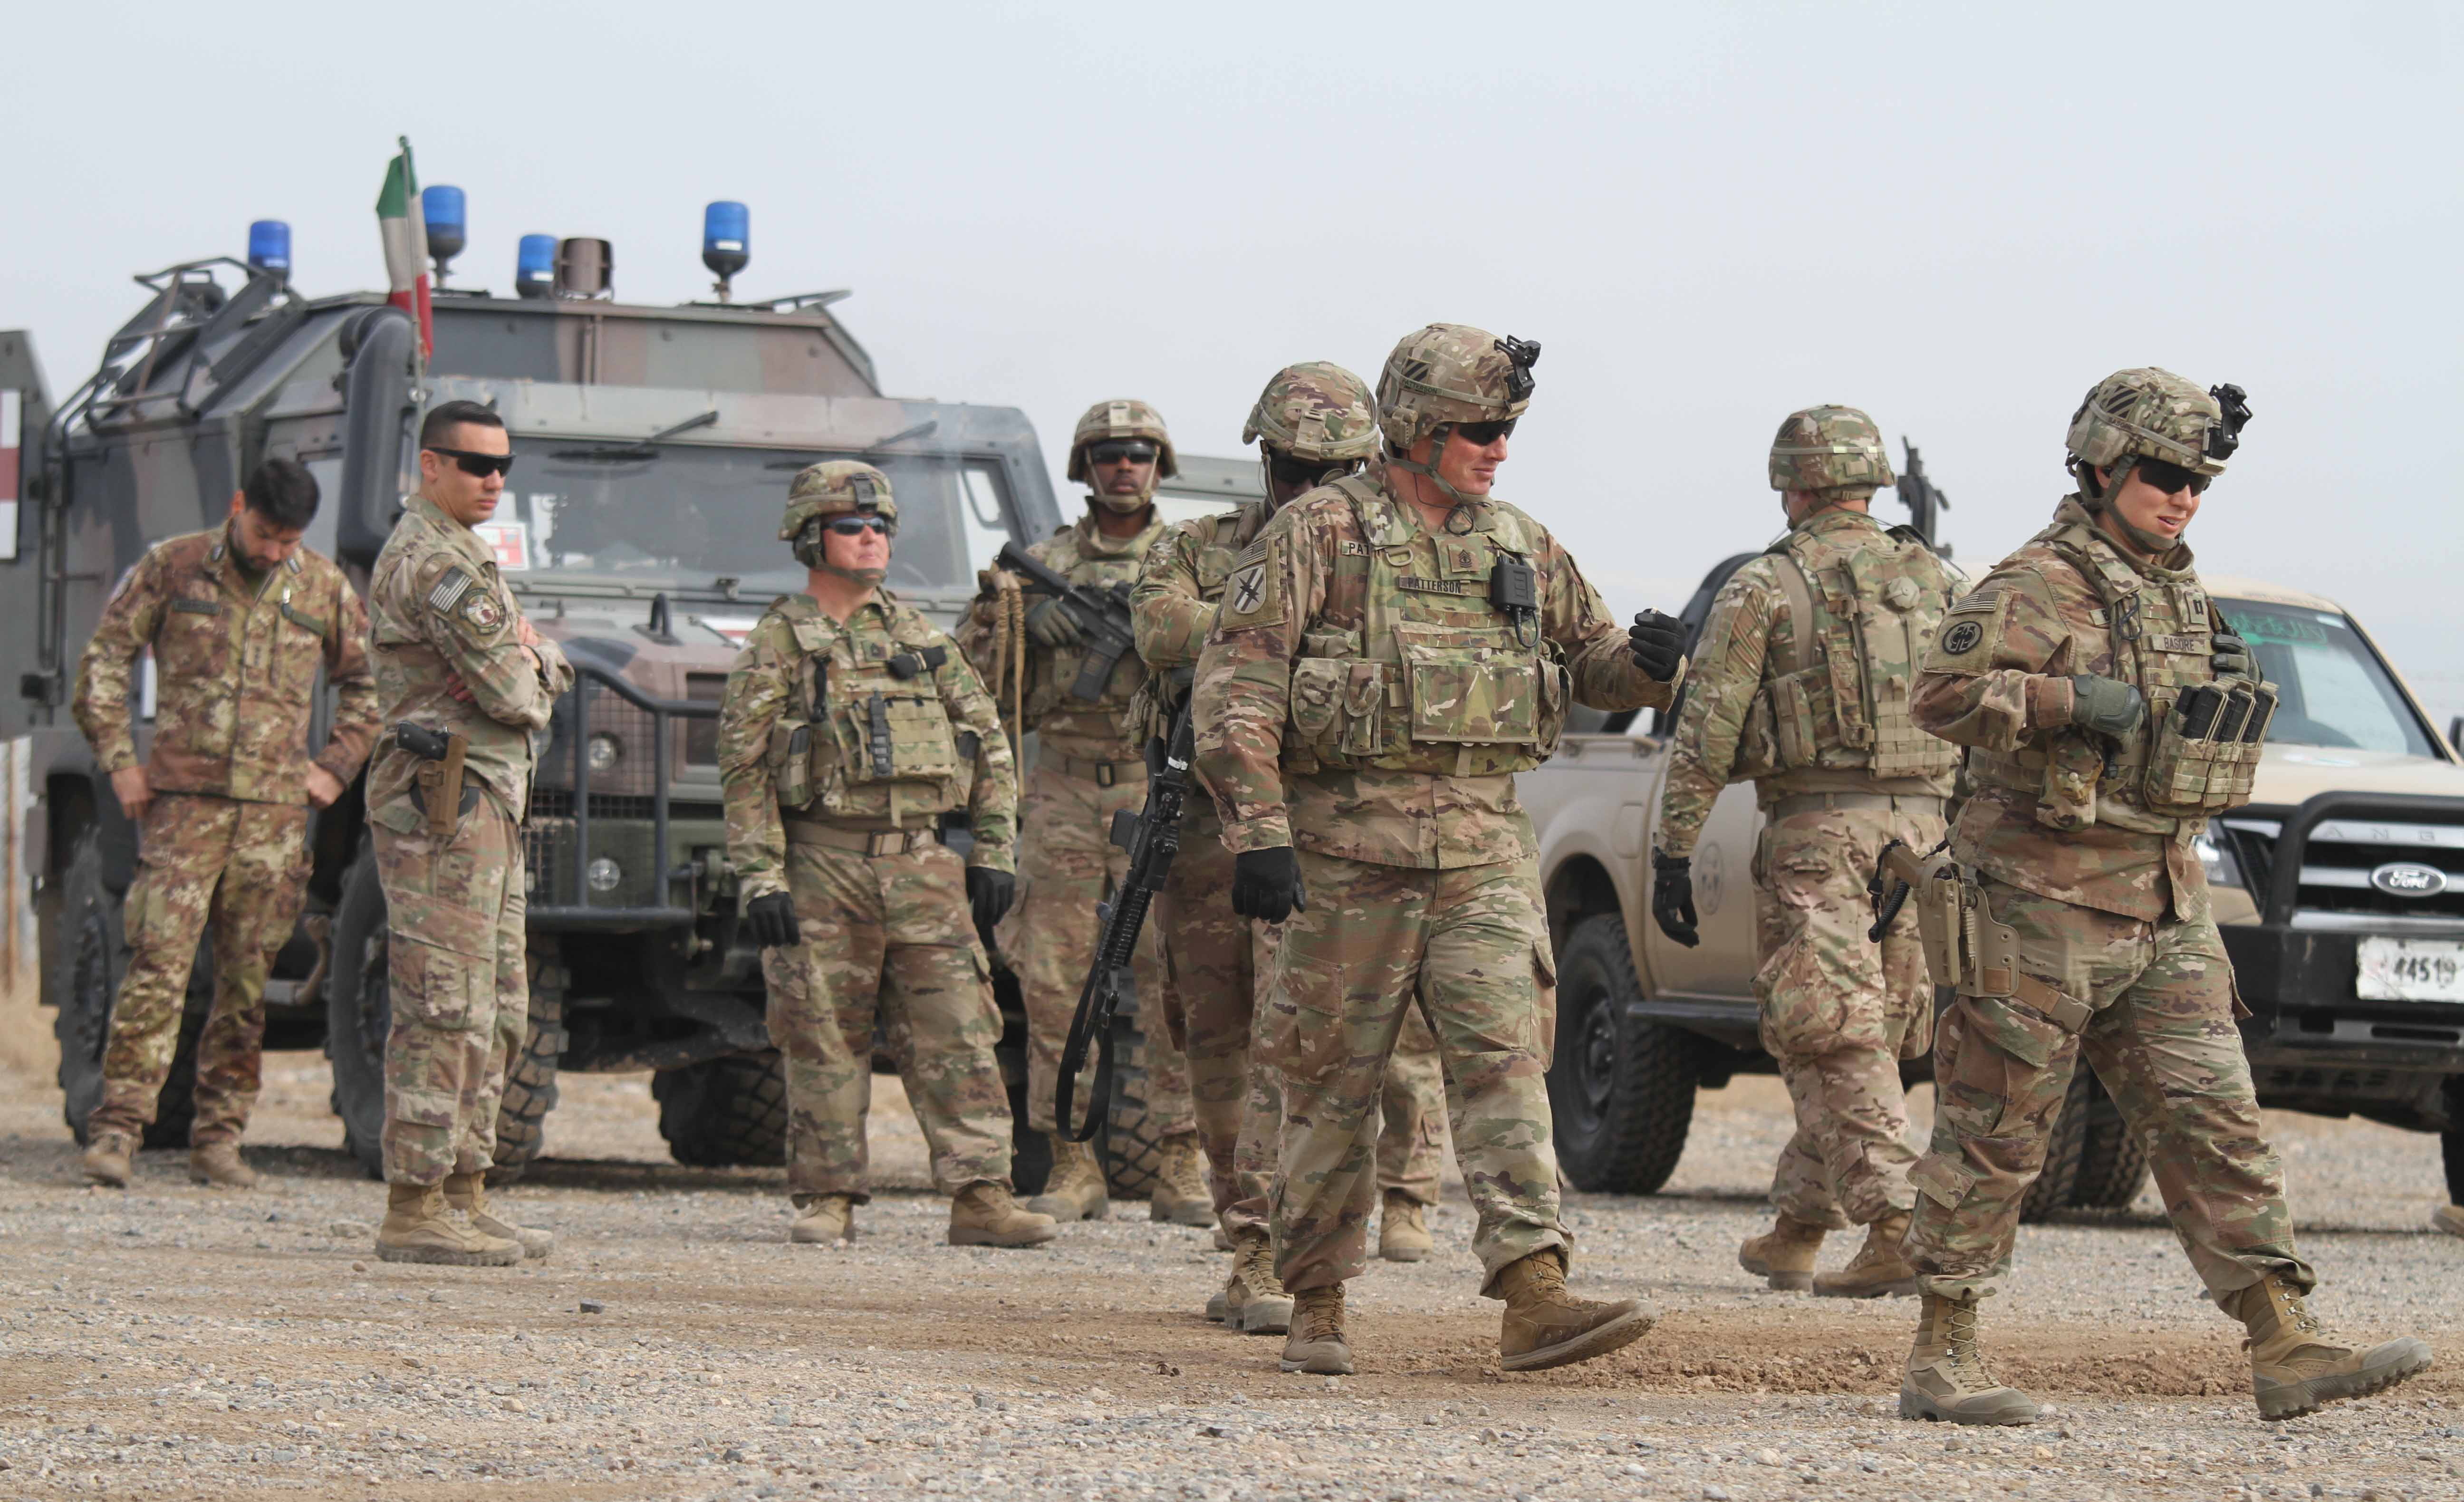 Vista de soldados estadounidenses durante una jornada de entrenamiento con fuerzas del orden afganas en Herat. EFE/Jalil Rezayee/Archivo
